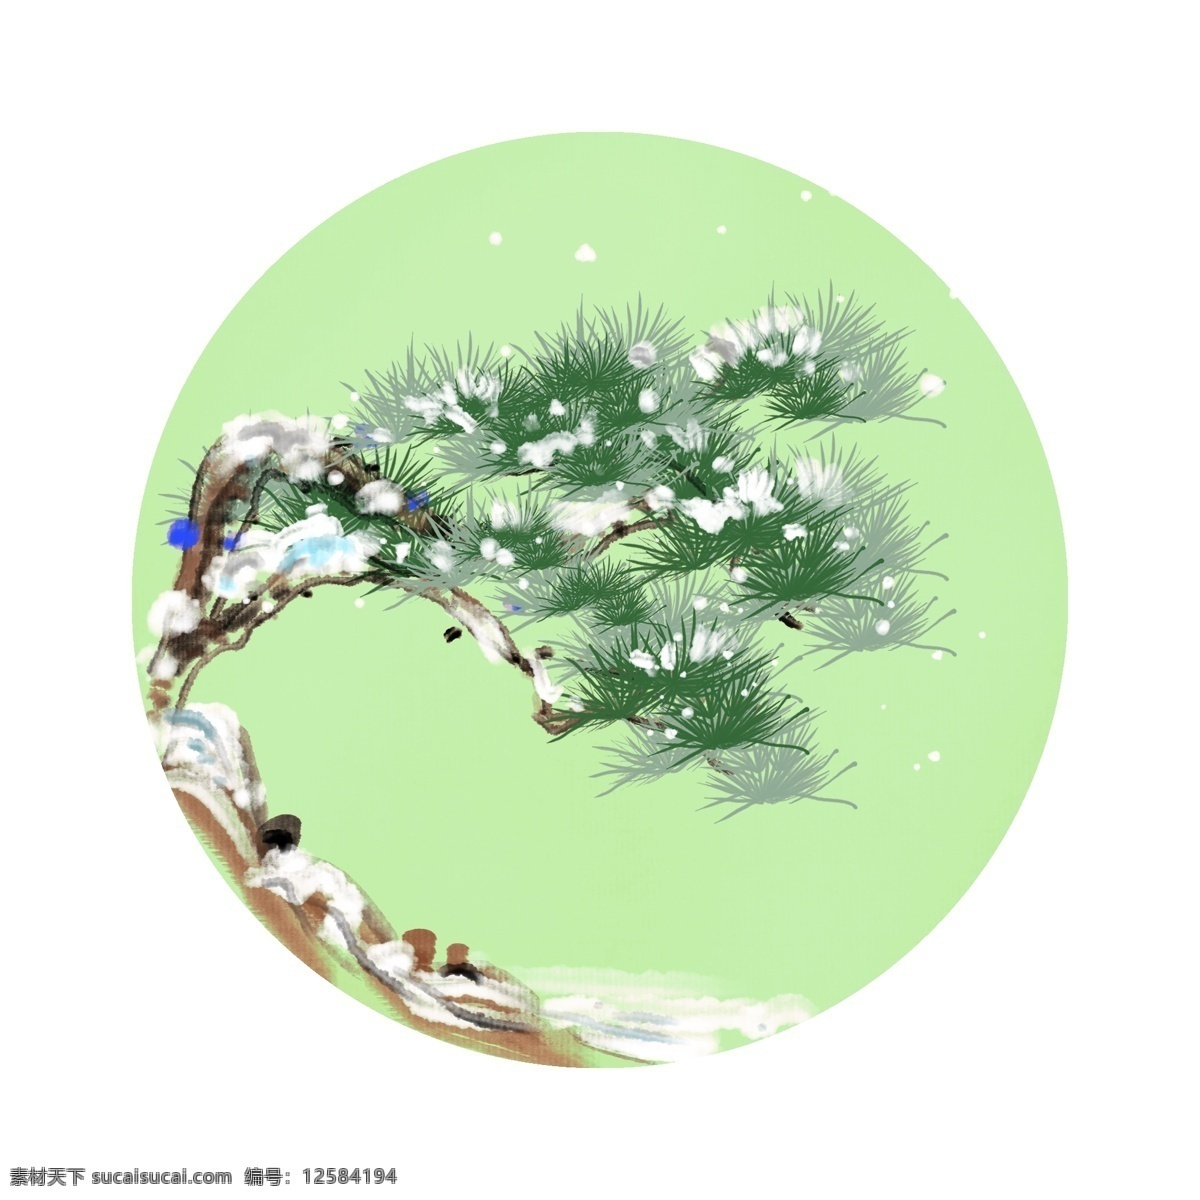 手绘 冬季 松树 边框 落雪的松树 绿油油的松树 卡通边框 手绘圆形边框 冬季圆形边框 冬天的松树